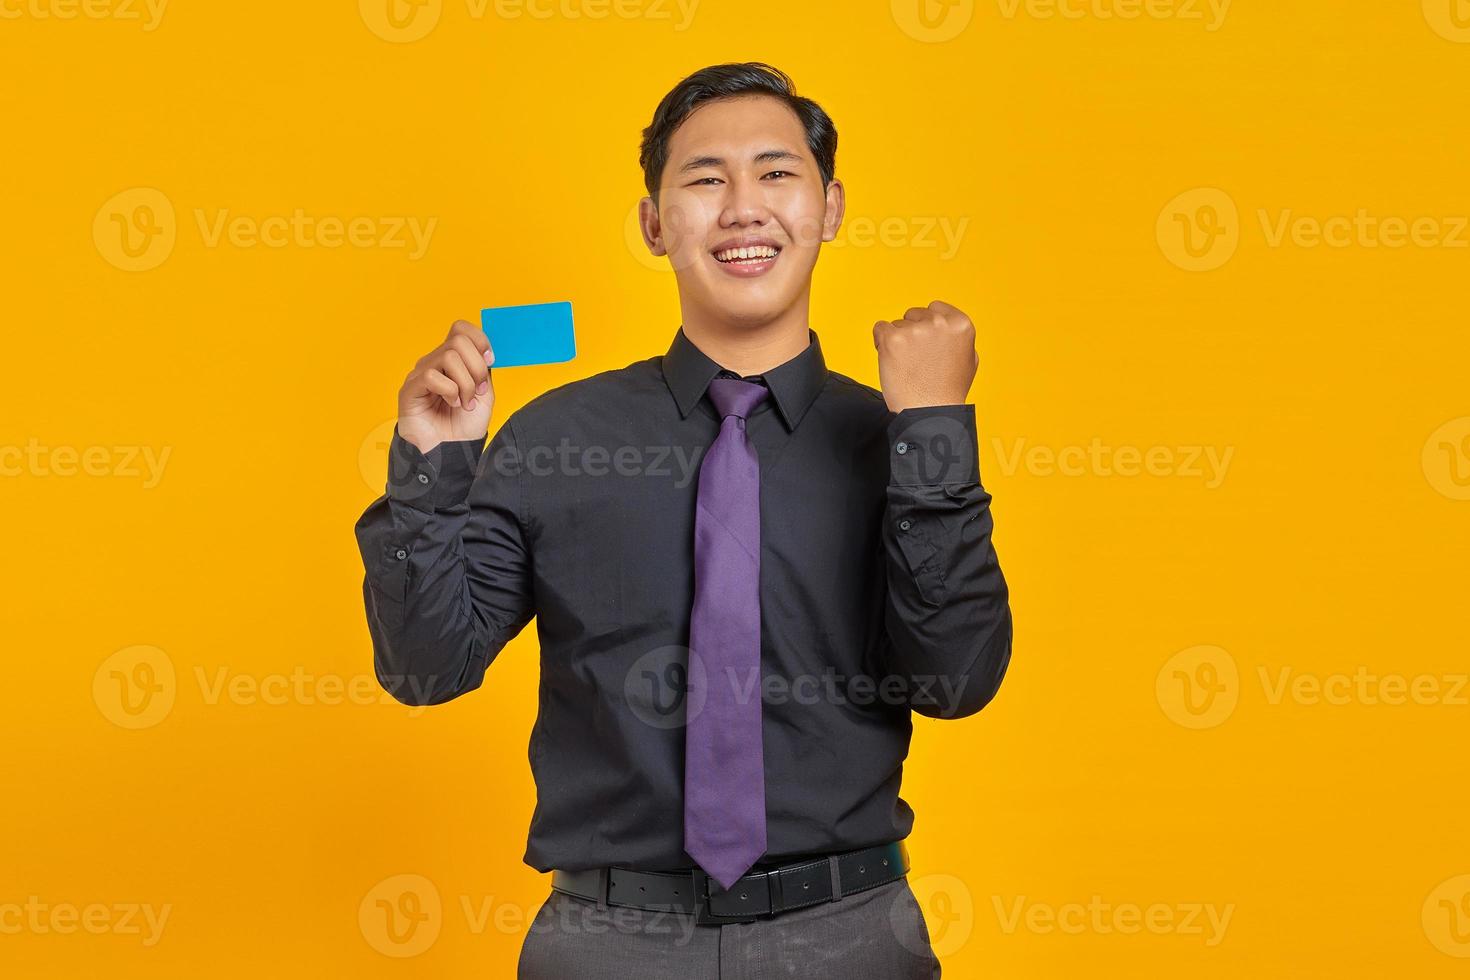 Retrato de emocionado alegre joven empresario asiático celebrando la suerte con tarjeta de crédito en la mano foto